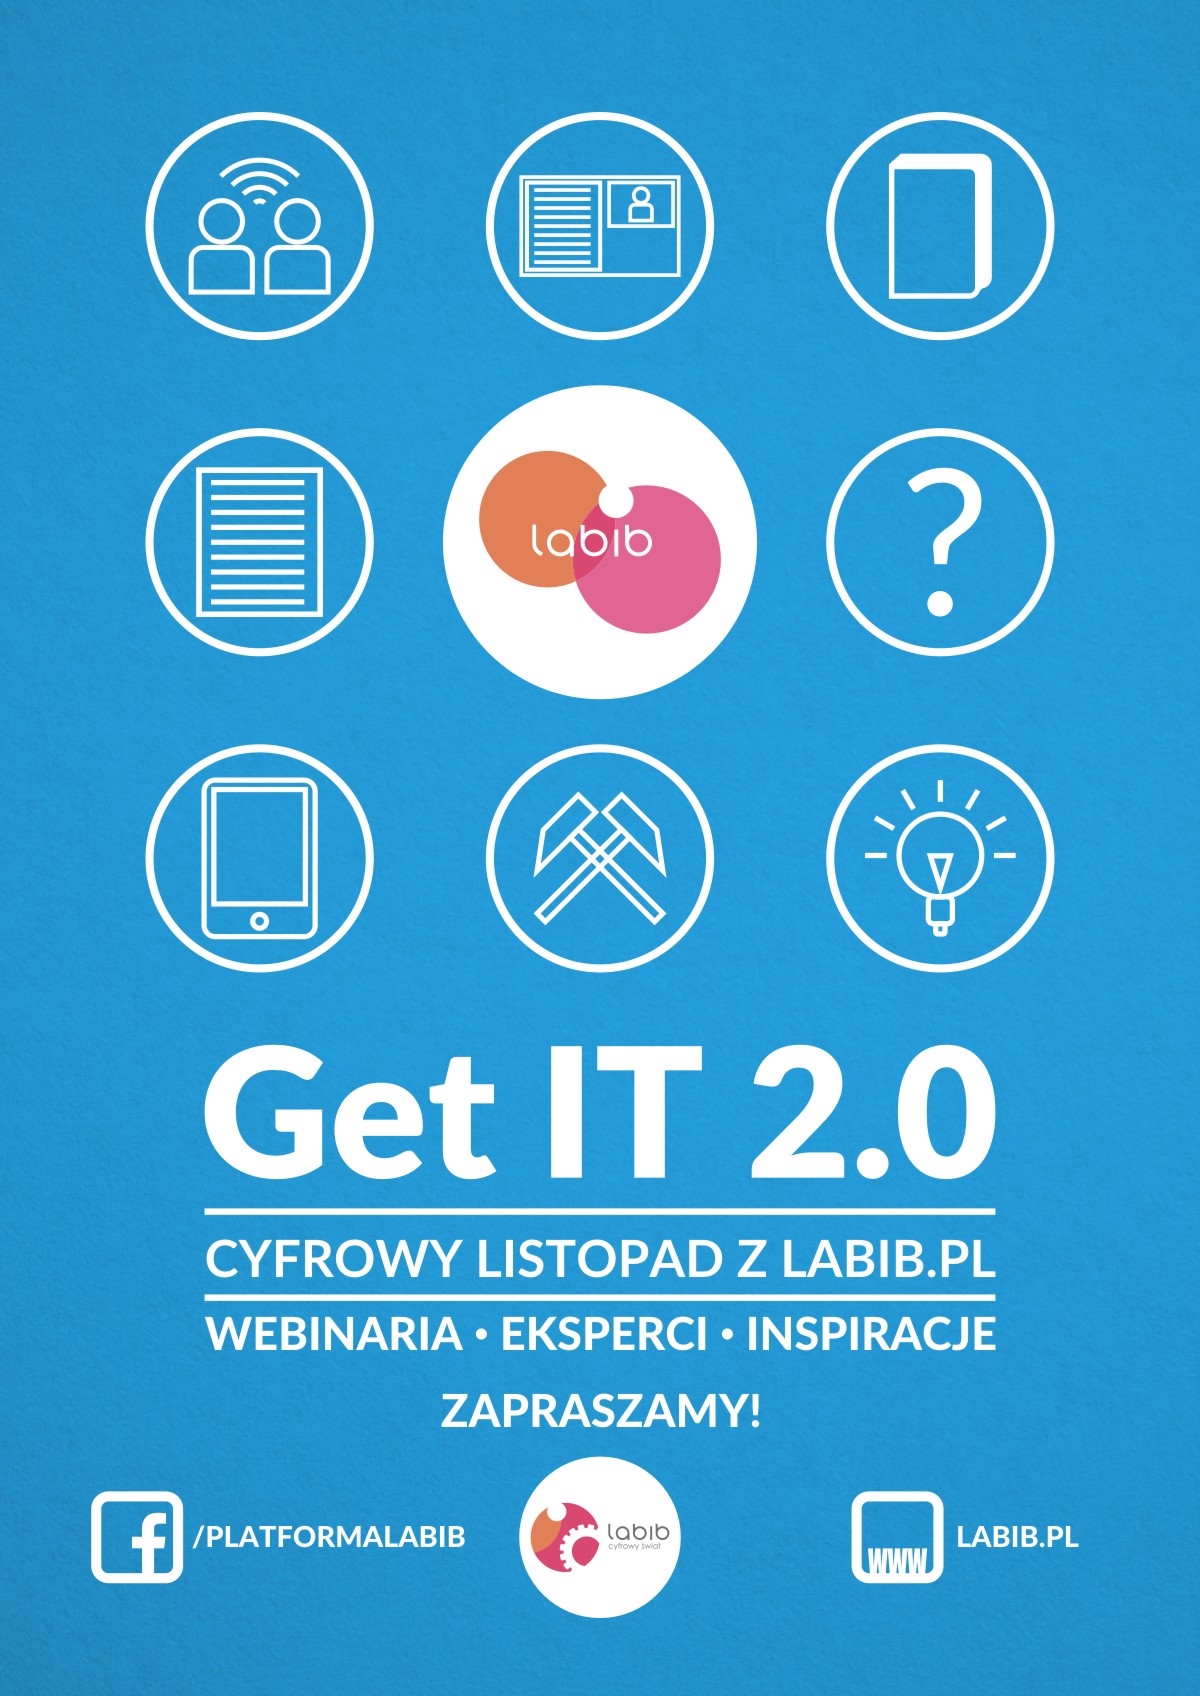 GET IT 2.0, czyli cyfrowy listopad na labib.pl